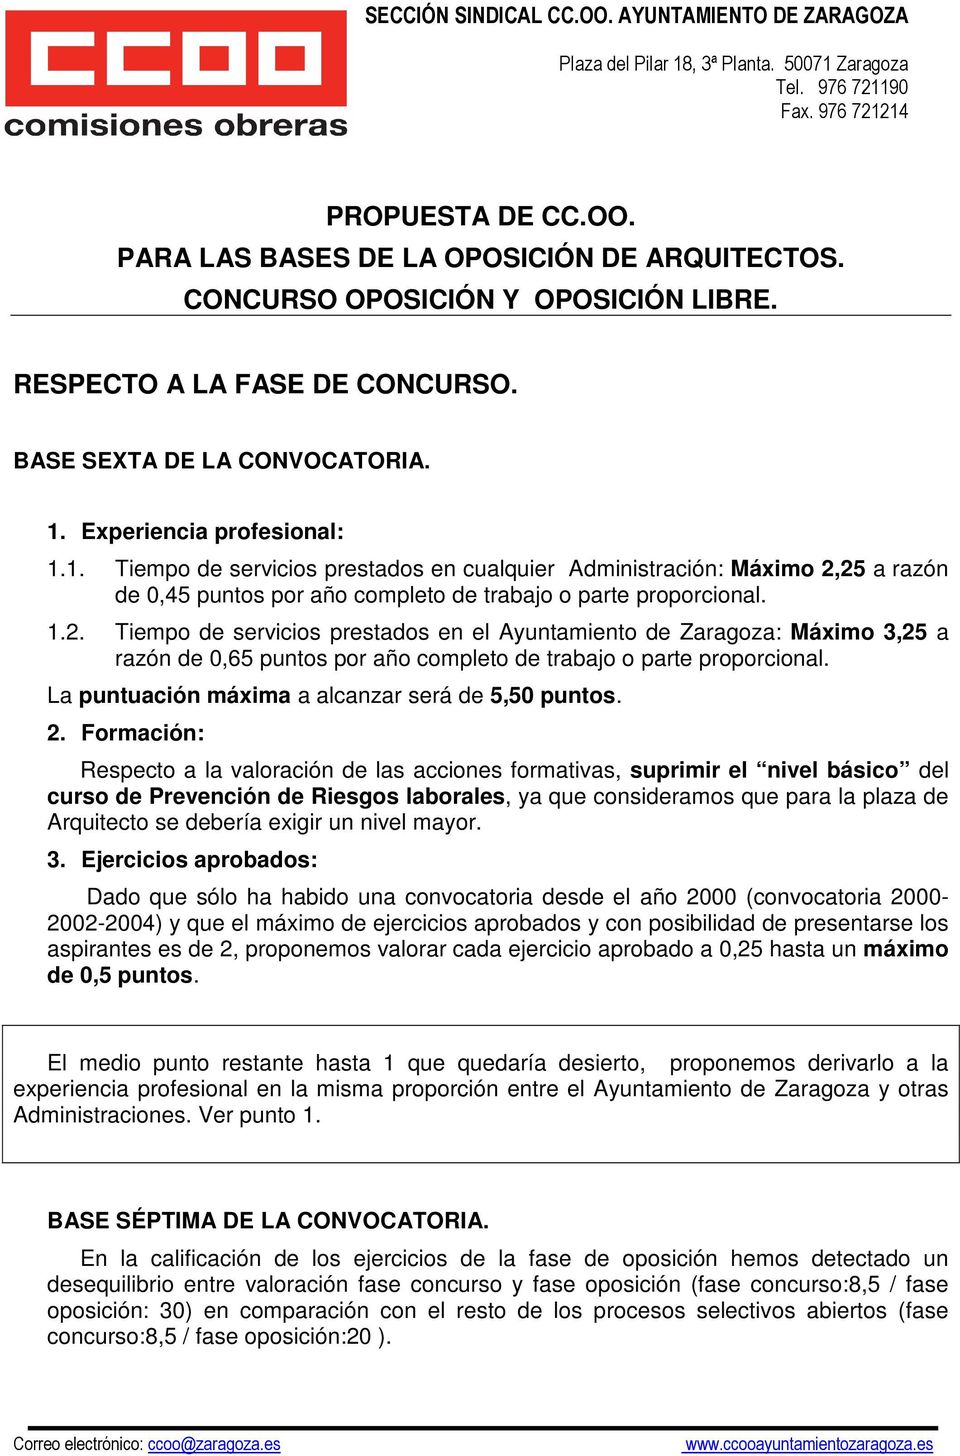 25 a razón de 0,45 puntos por año completo de trabajo o parte proporcional. 1.2. Tiempo de servicios prestados en el Ayuntamiento de Zaragoza: Máximo 3,25 a razón de 0,65 puntos por año completo de trabajo o parte proporcional.